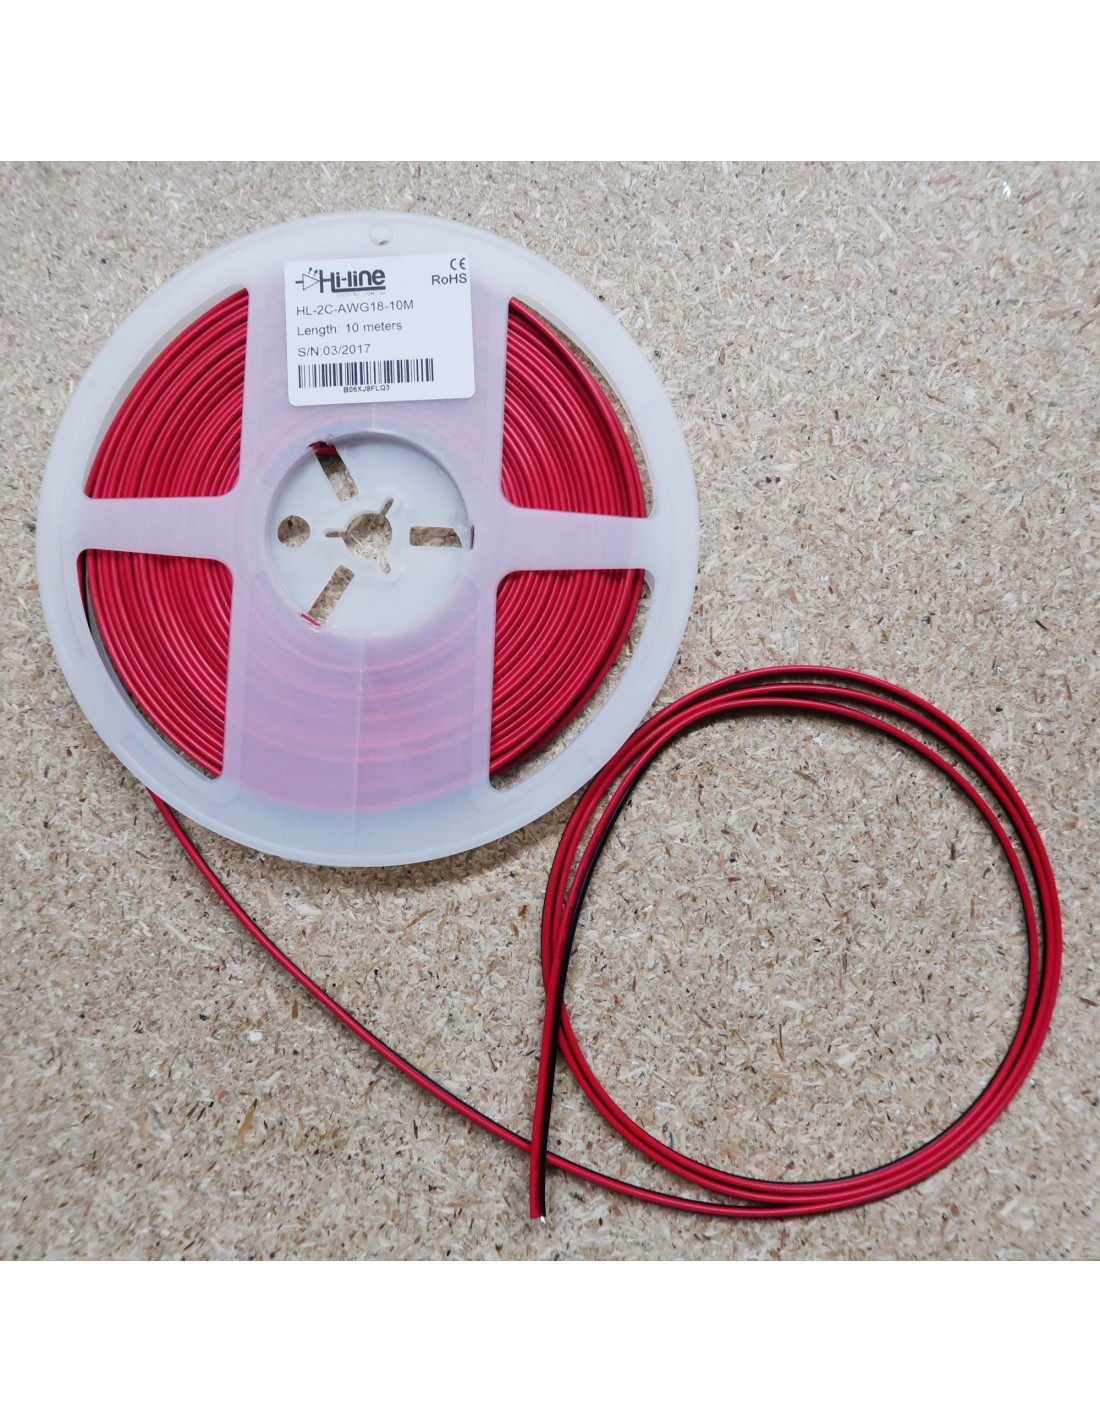 Kabelband für einfarbige LED-Streifen 10m Rolle